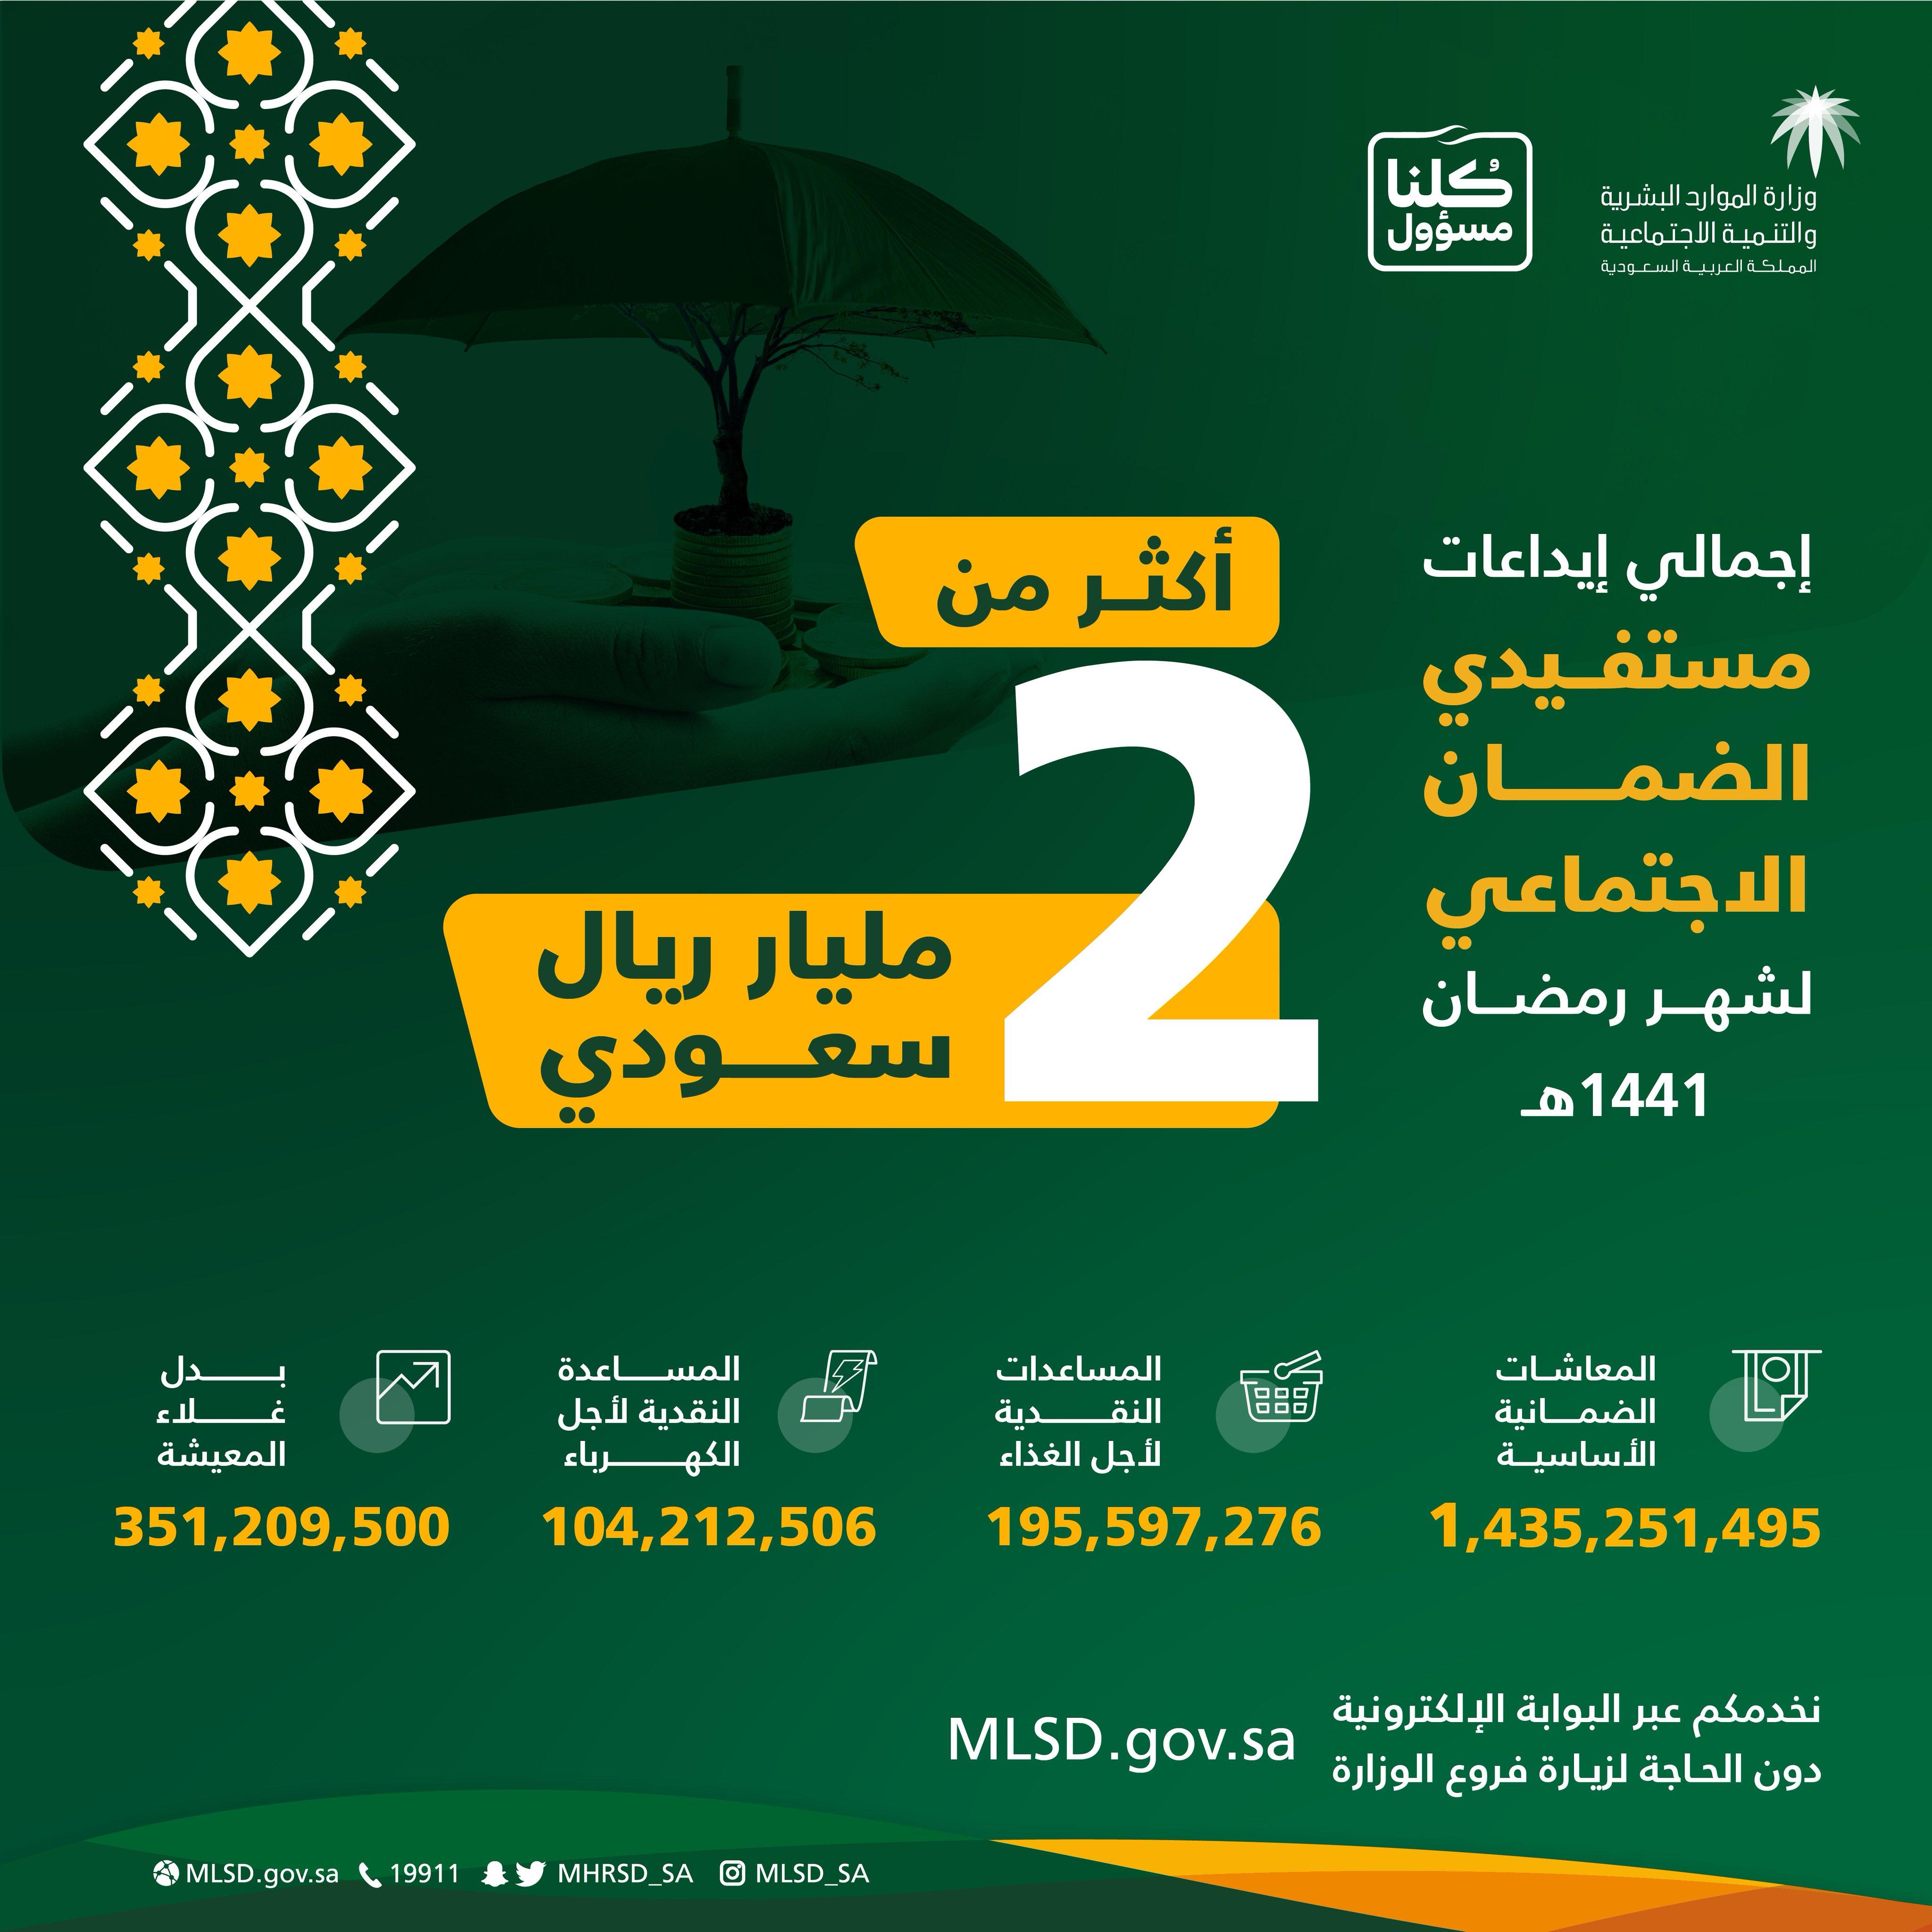 كم عدد المستفيدين من الضمان الاجتماعي في السعودية